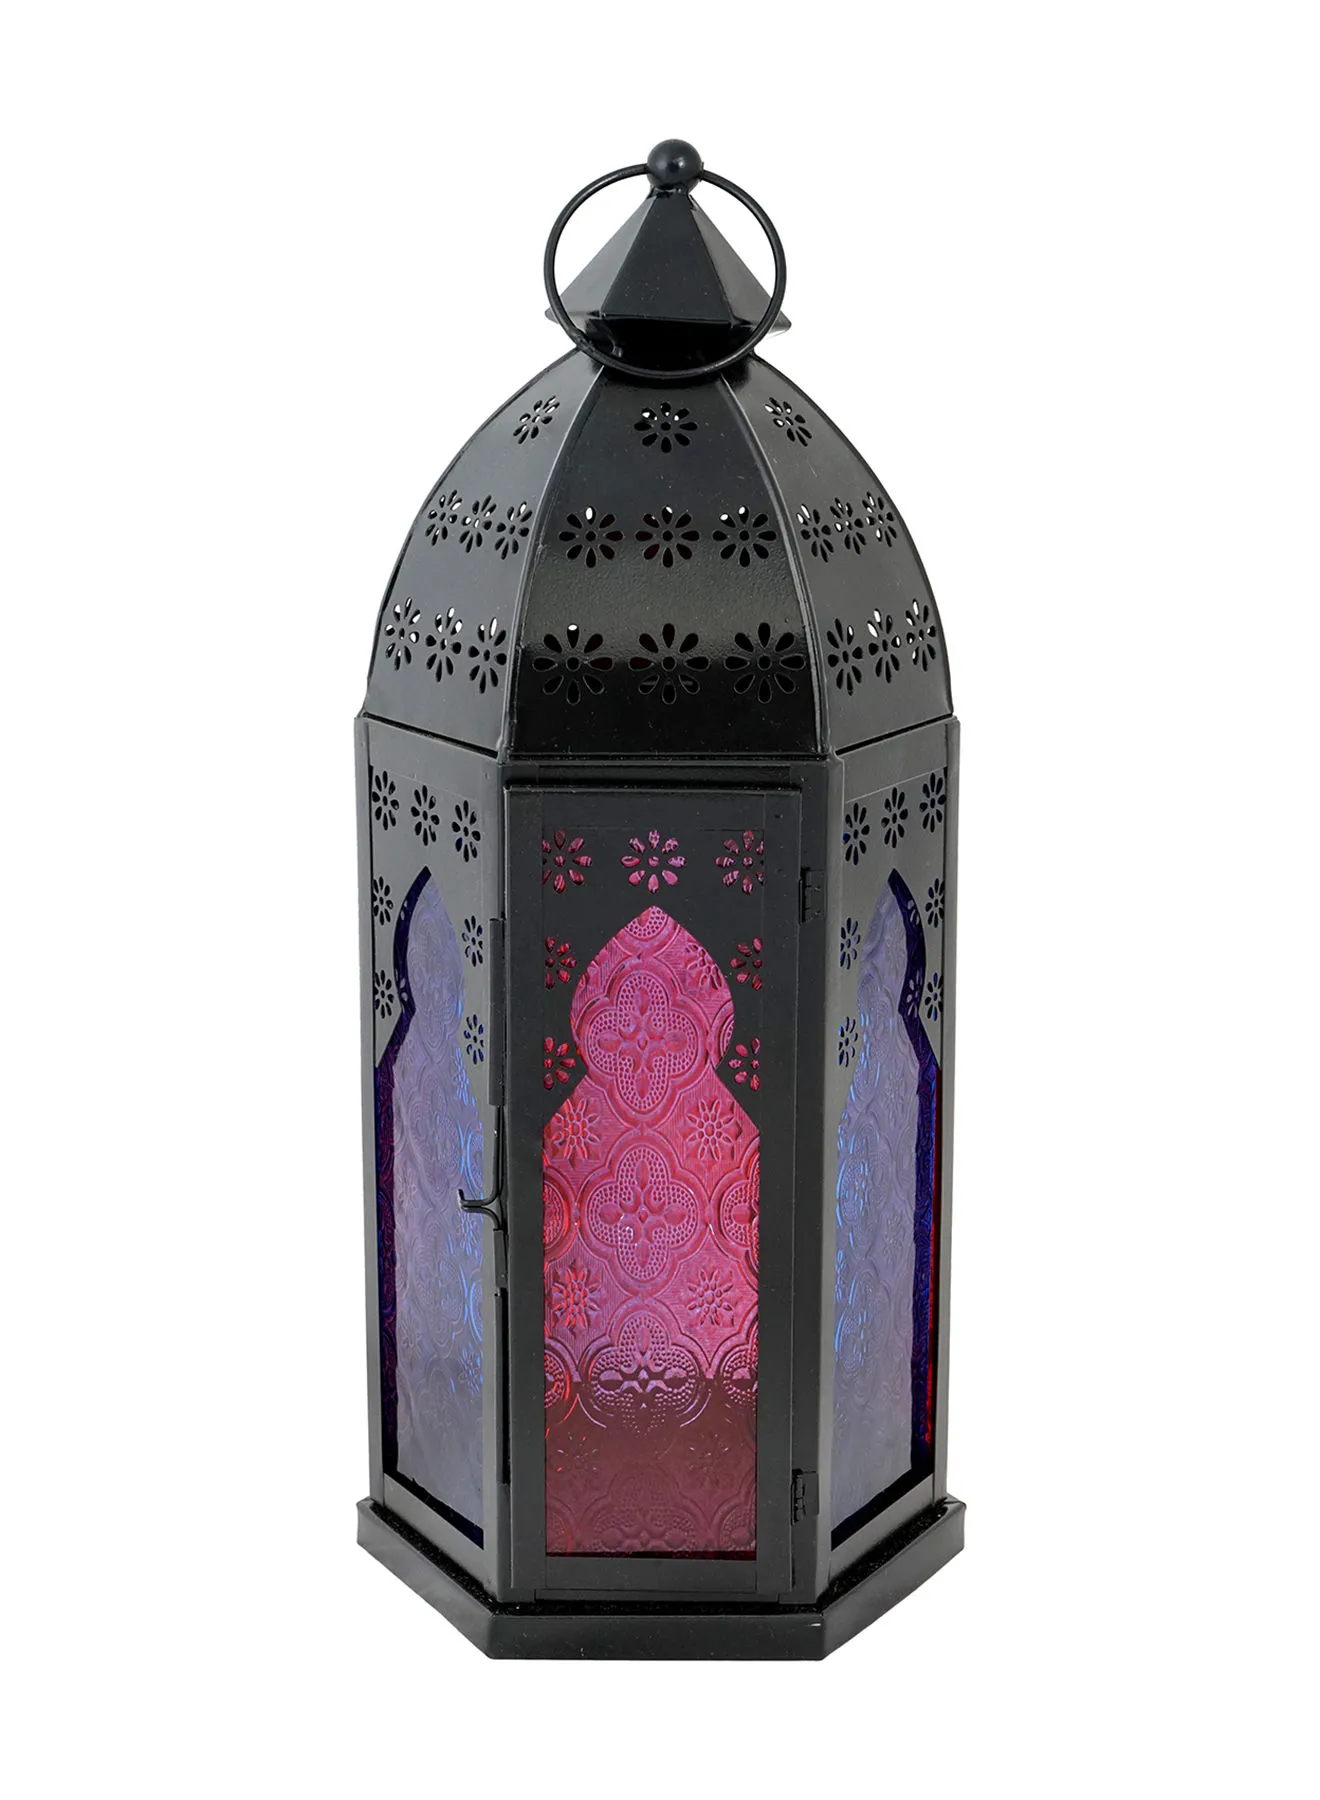 Ebb & Flow فانوس شمع رمضان الحديث مع زجاج برائحة فريدة وفاخرة الجودة لمنزل أنيق ومثالي أسود 18 x 18 x 40cm